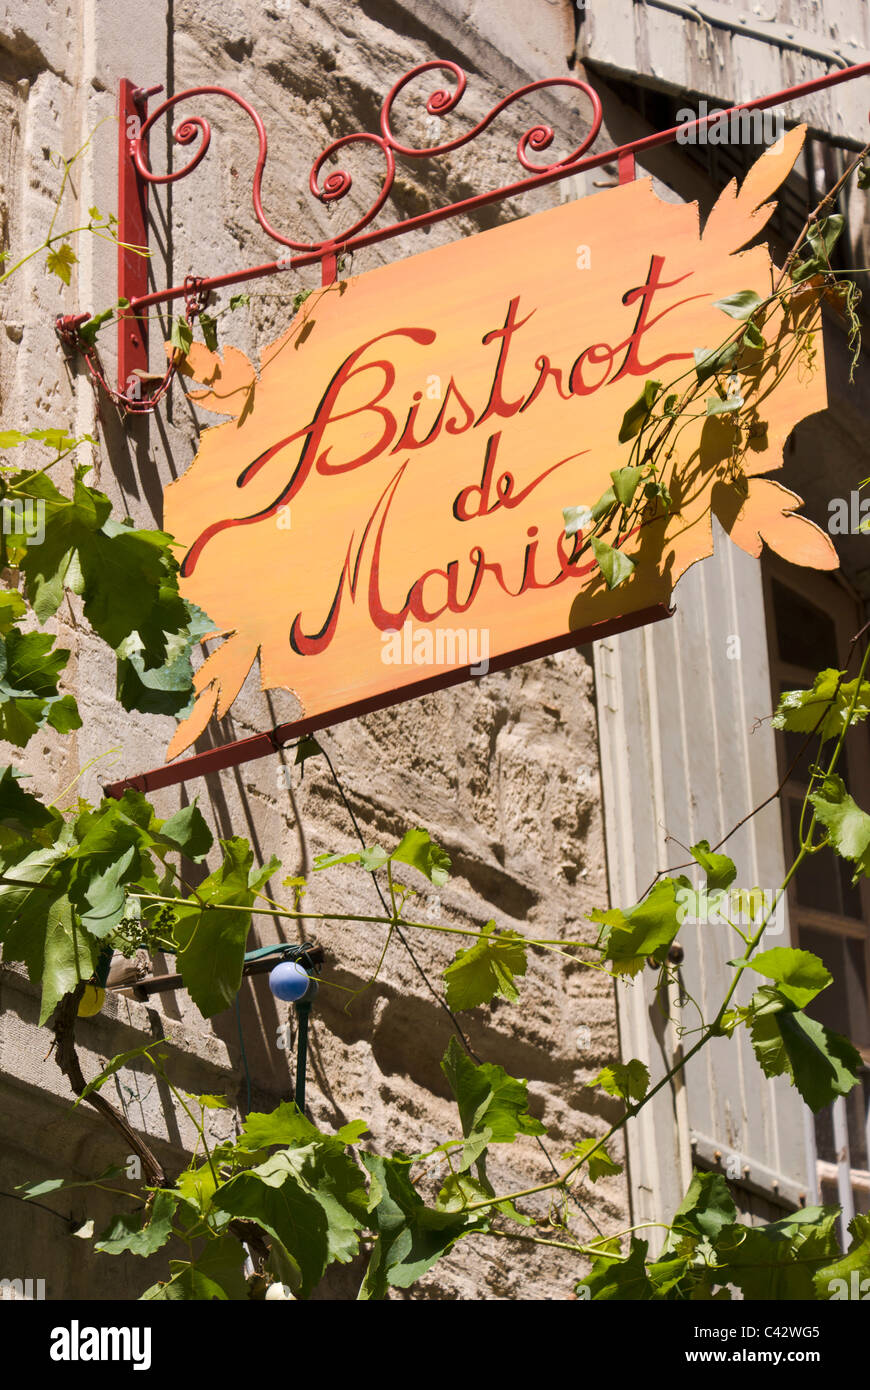 Le Bistrot de Marie, restaurant in Saint-Rémy-de-Provence Stock Photo